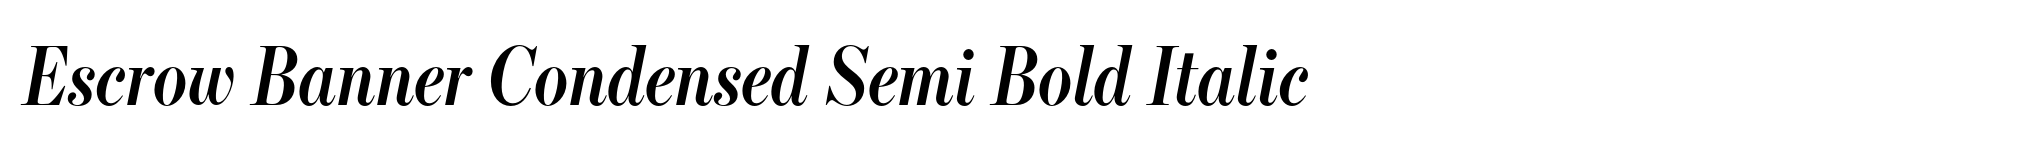 Escrow Banner Condensed Semi Bold Italic image